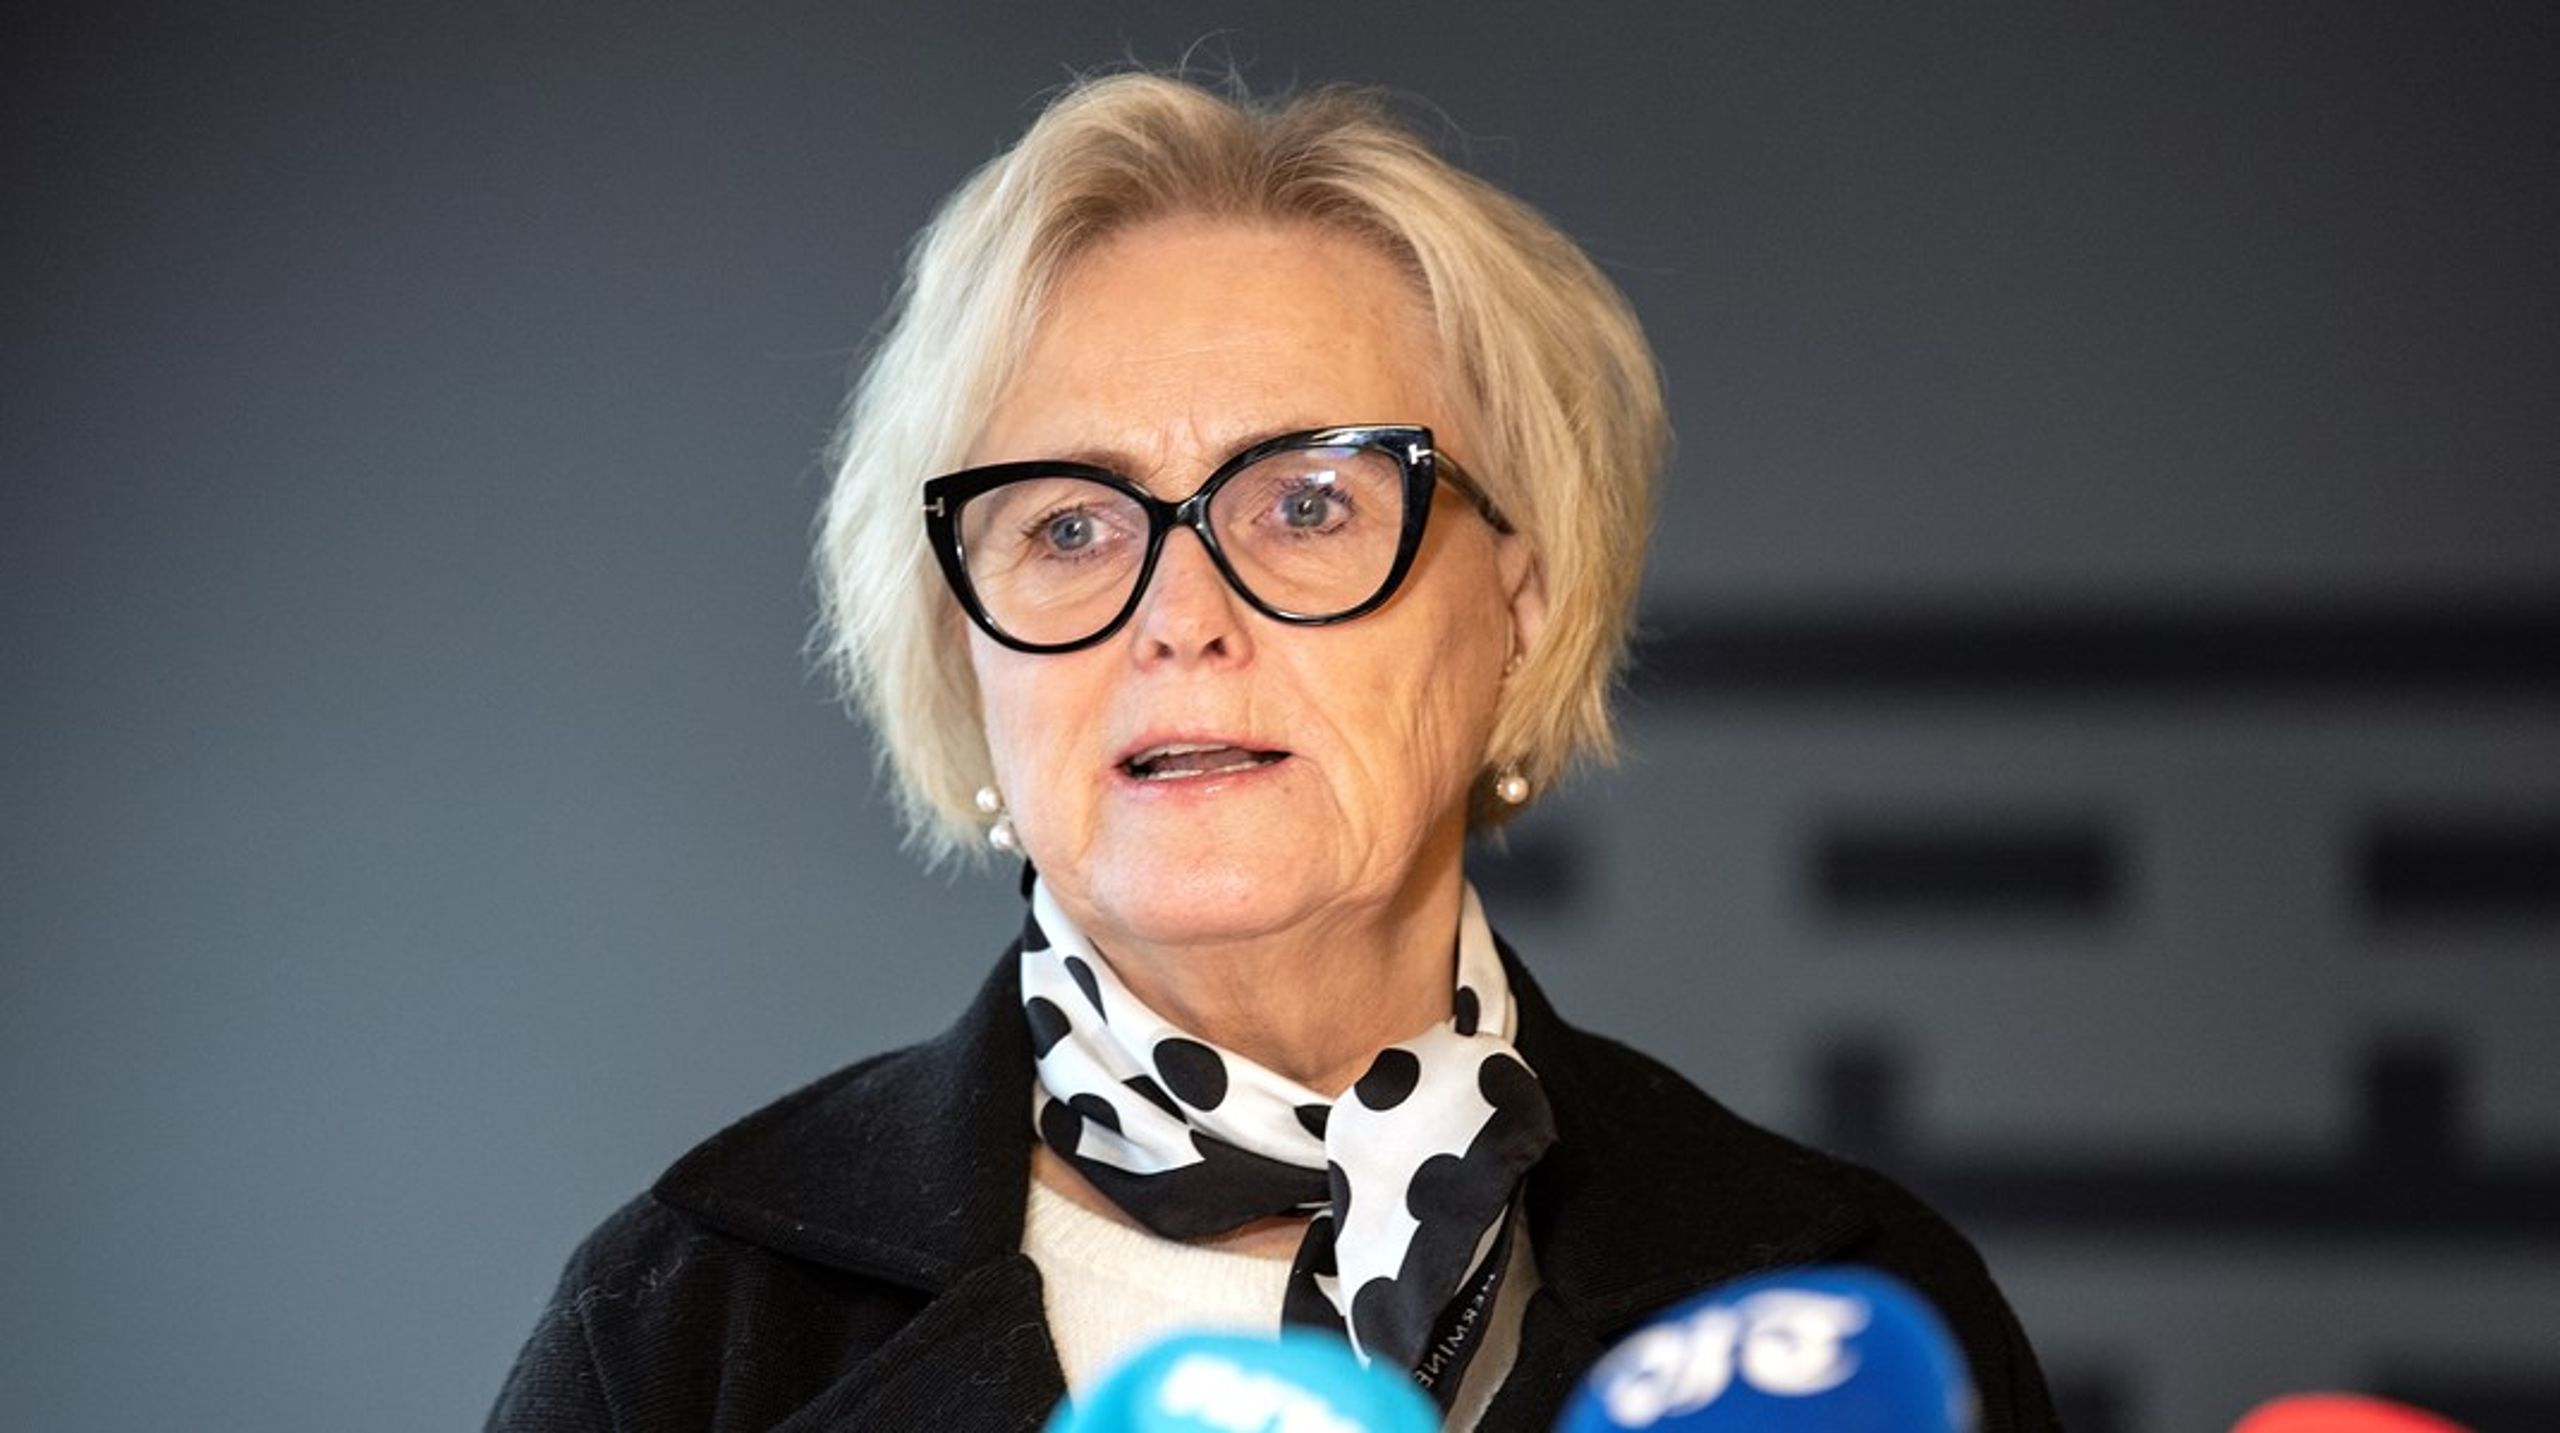 Thorhild Widvey går av som styreleder for Statkraft etter eget ønske, ifølge en pressemelding fra selskapet.<br>